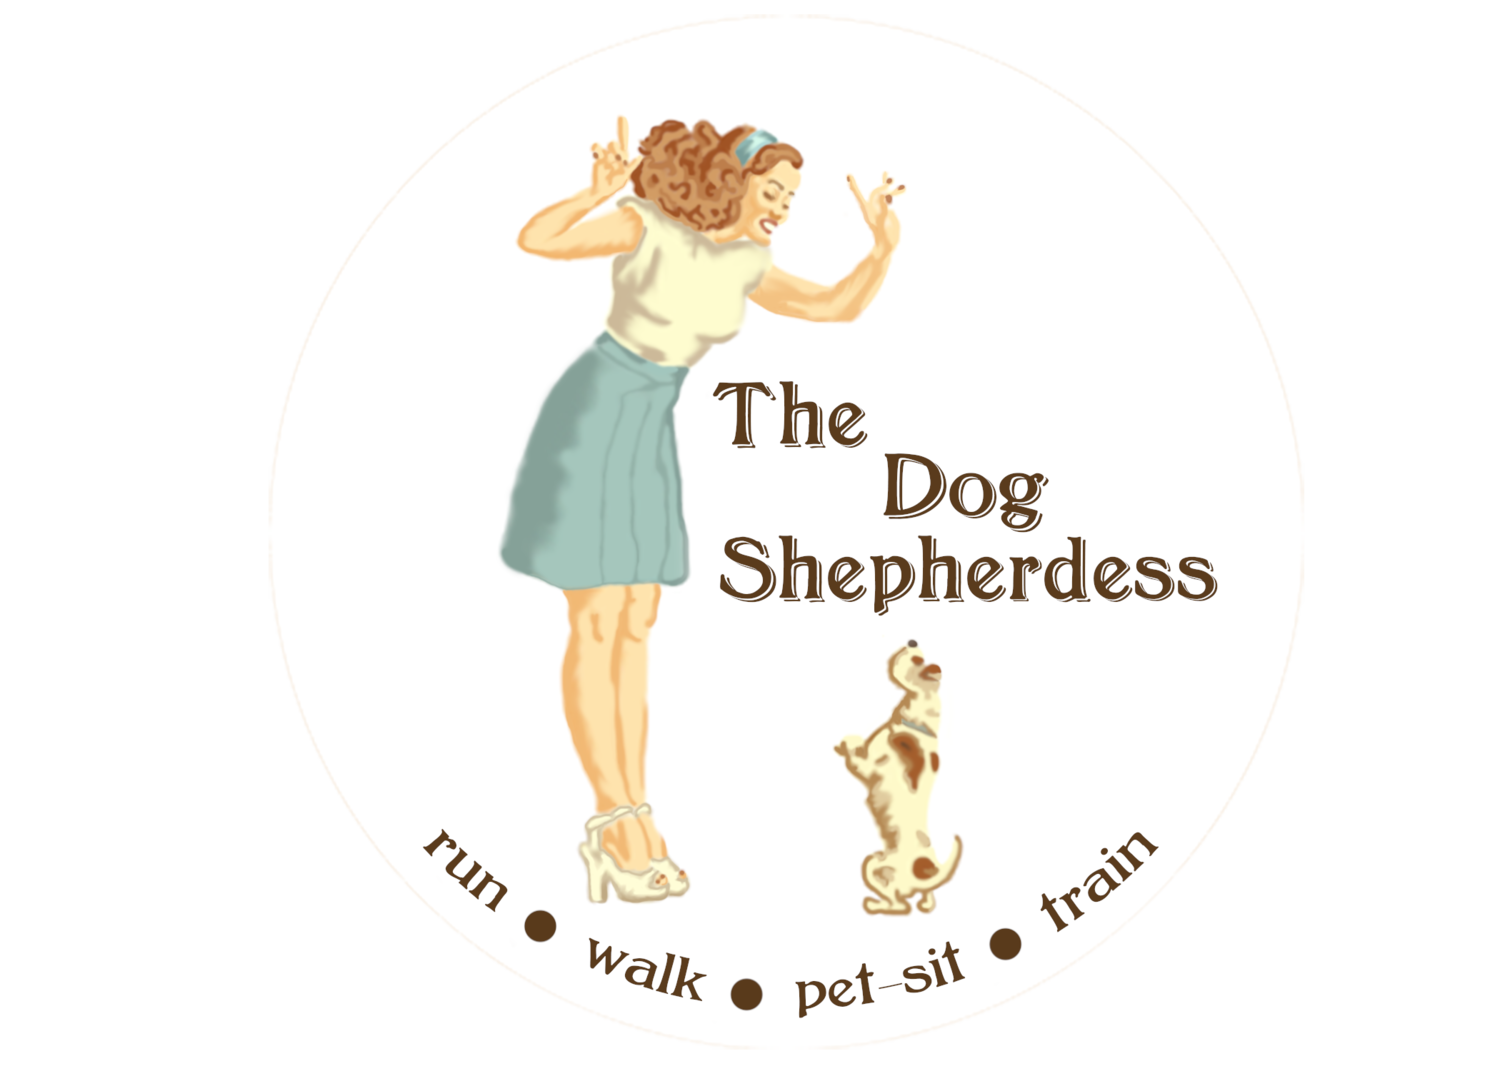 The Dog Shepherdess